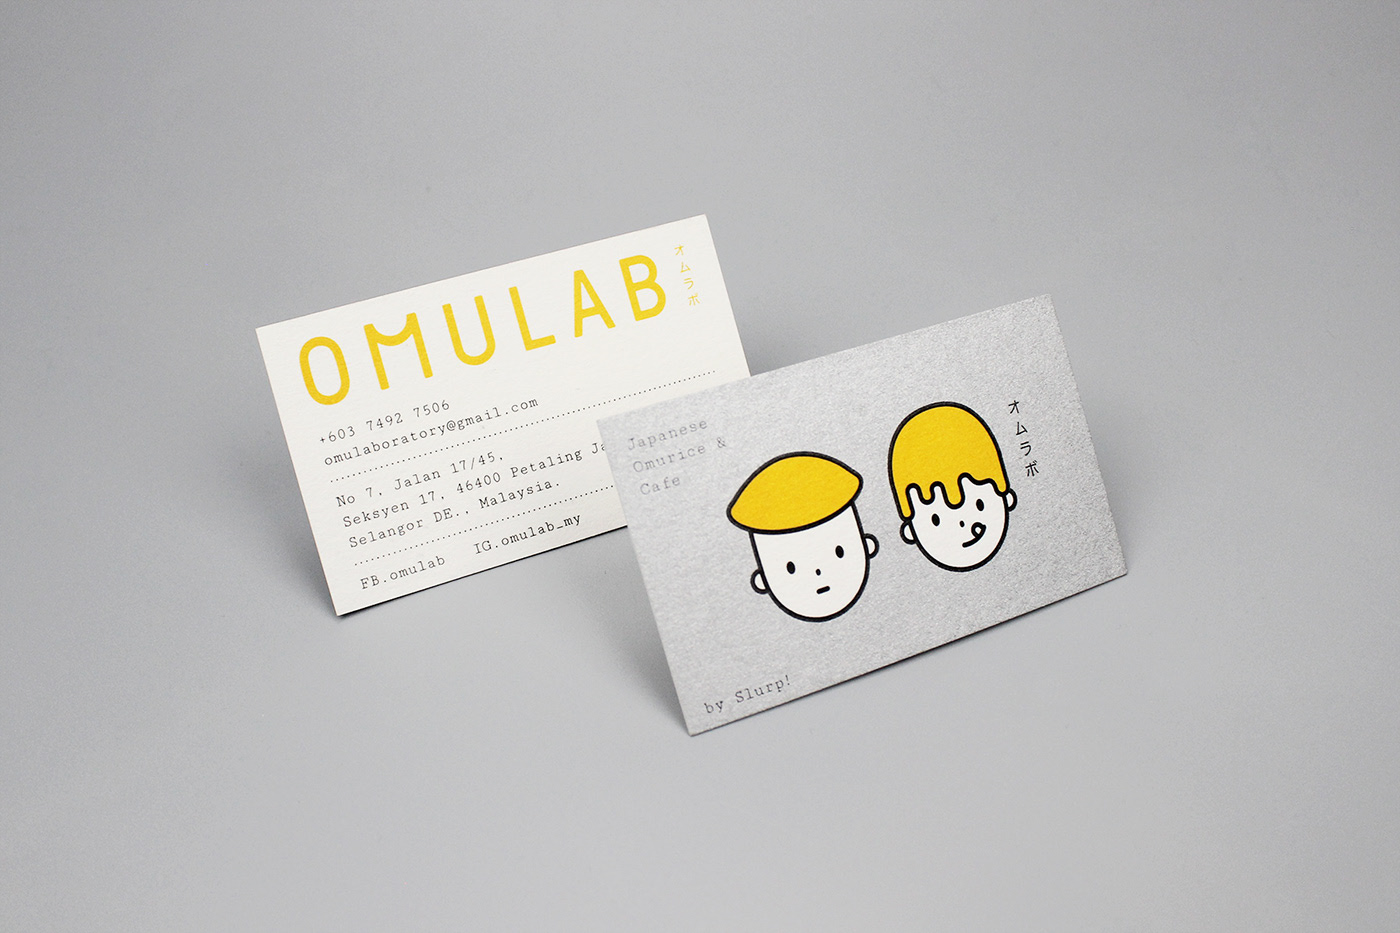 马来西亚日式餐厅Omulab品牌设计